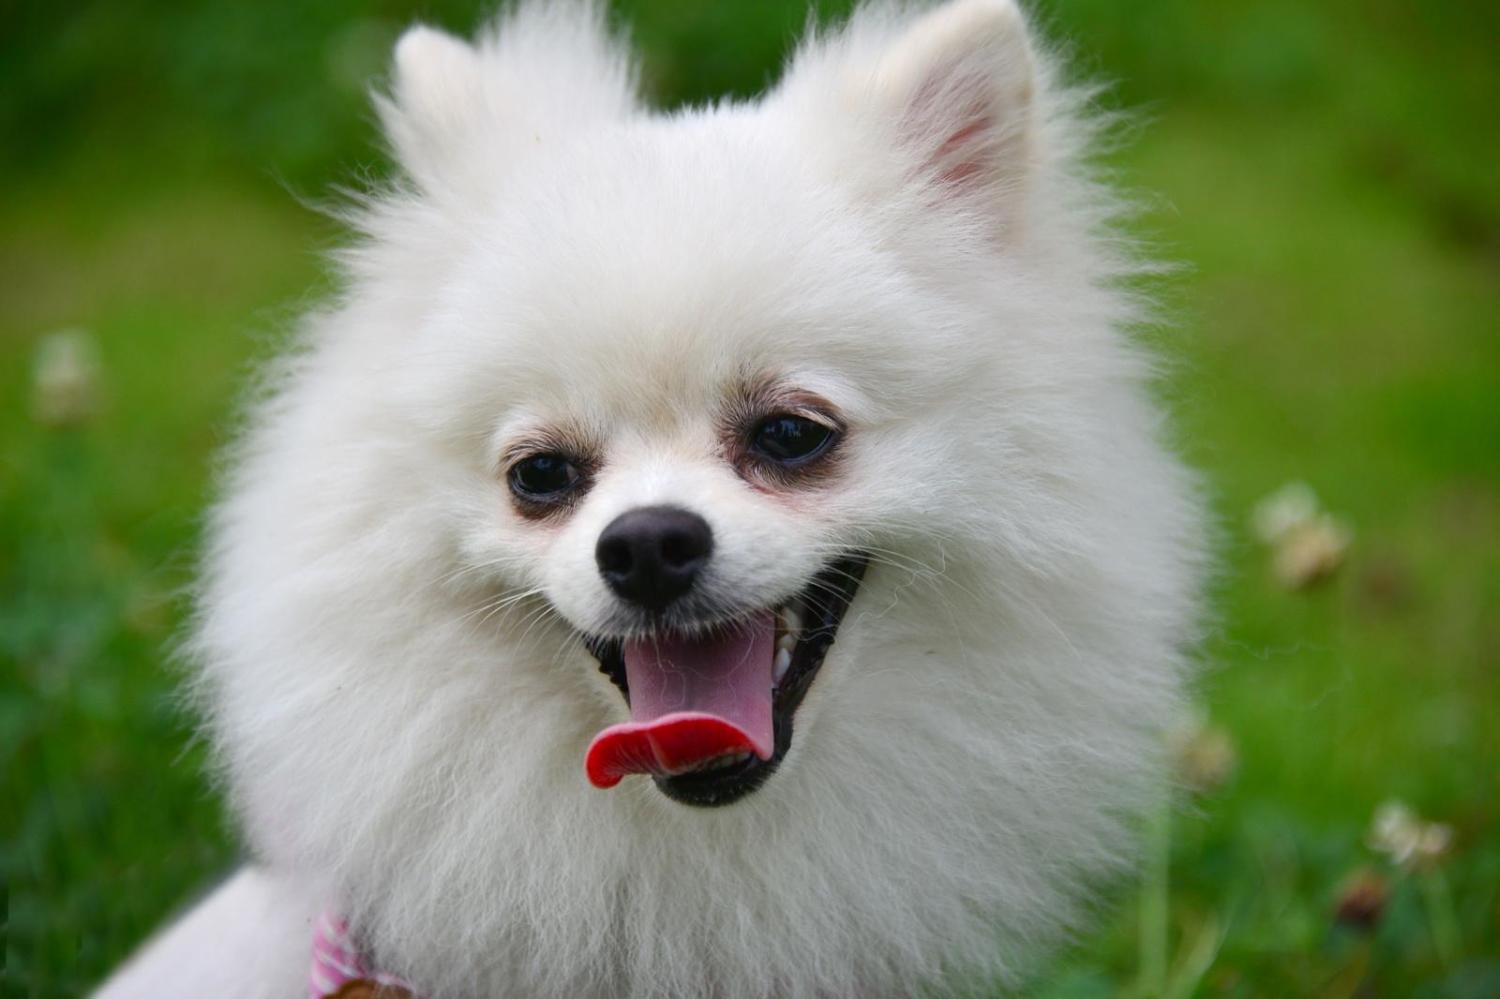 博美犬 狗 宠物 - Pixabay上的免费照片 - Pixabay